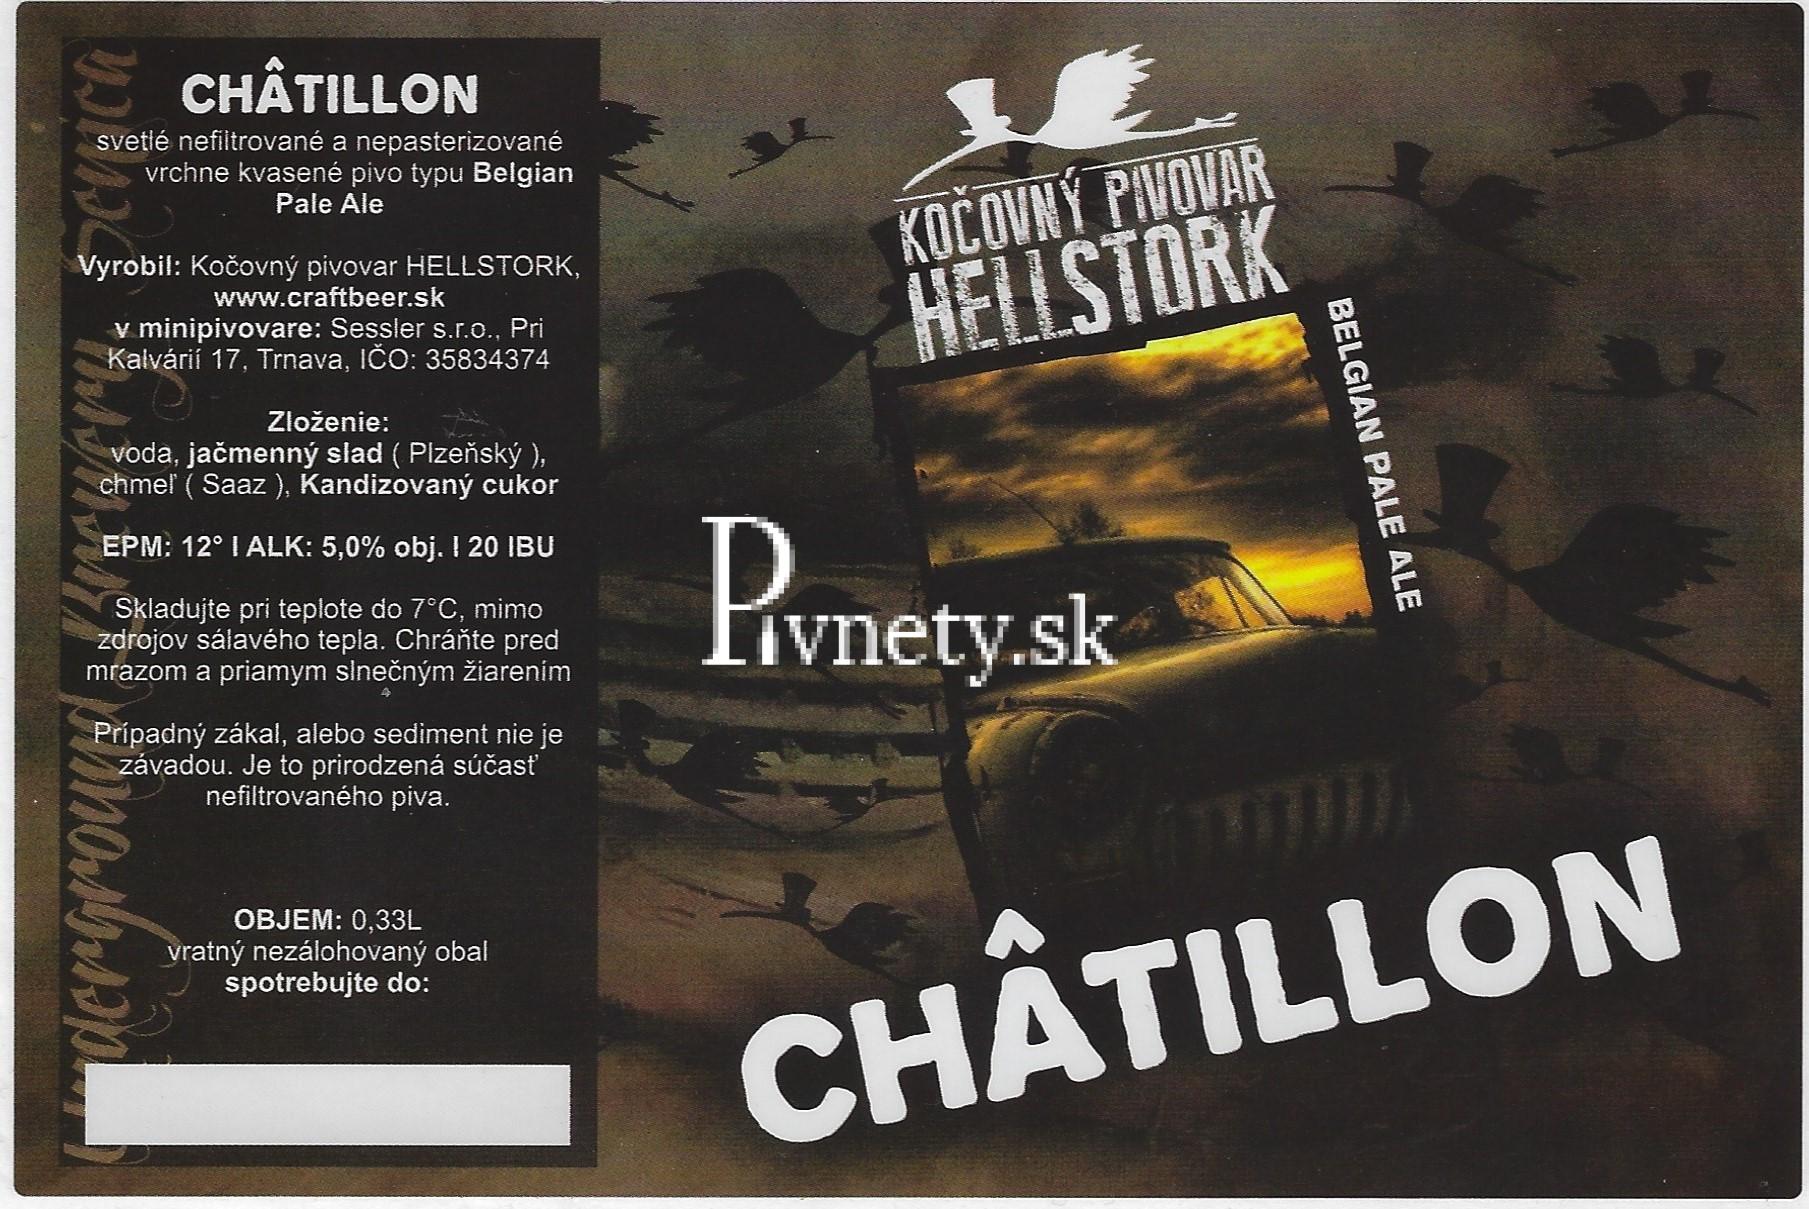 Kočovný pivovar Hellstork - Chatillon 12°